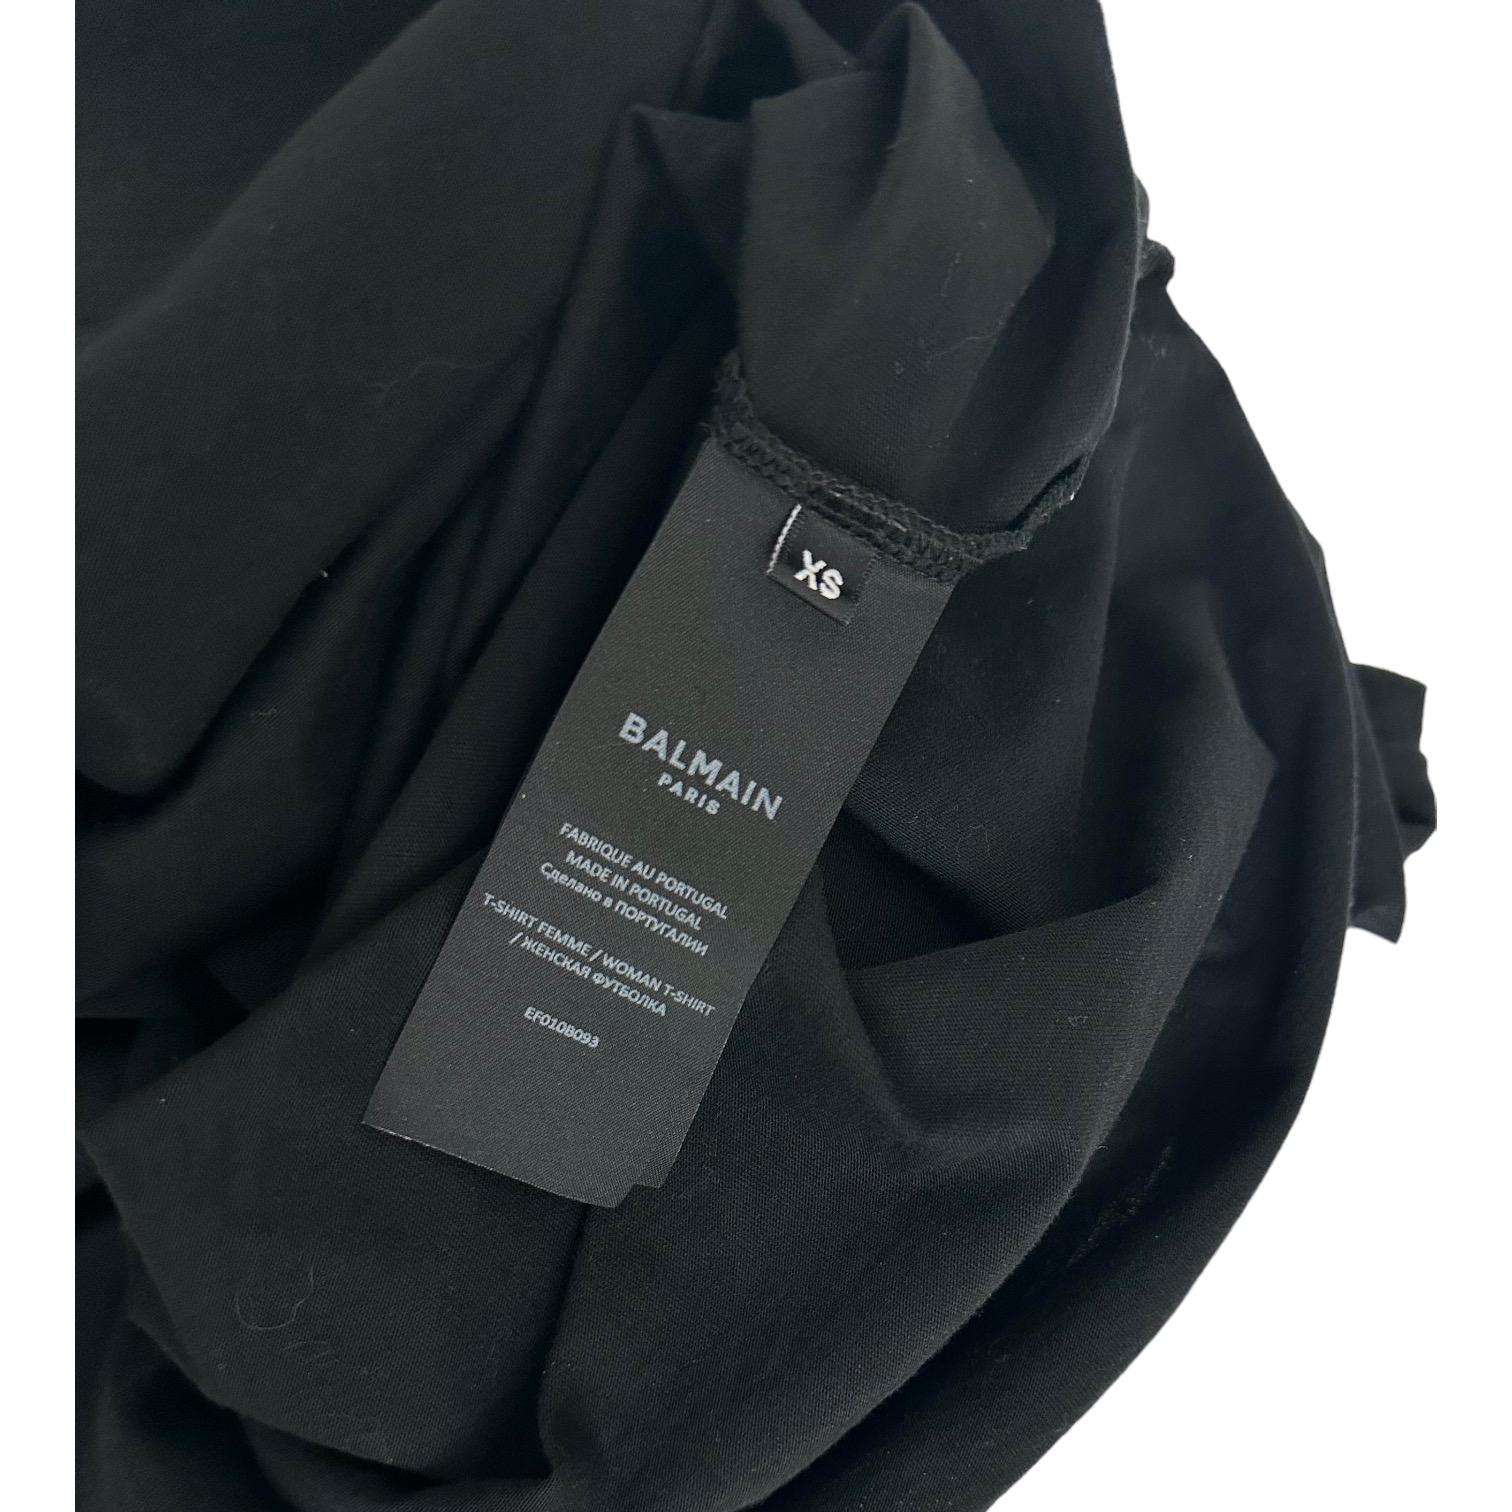 BALMAIN PARIS Black T-Shirt Top Embellishment Cap Sleeve Crew Neck Cotton XS For Sale 1